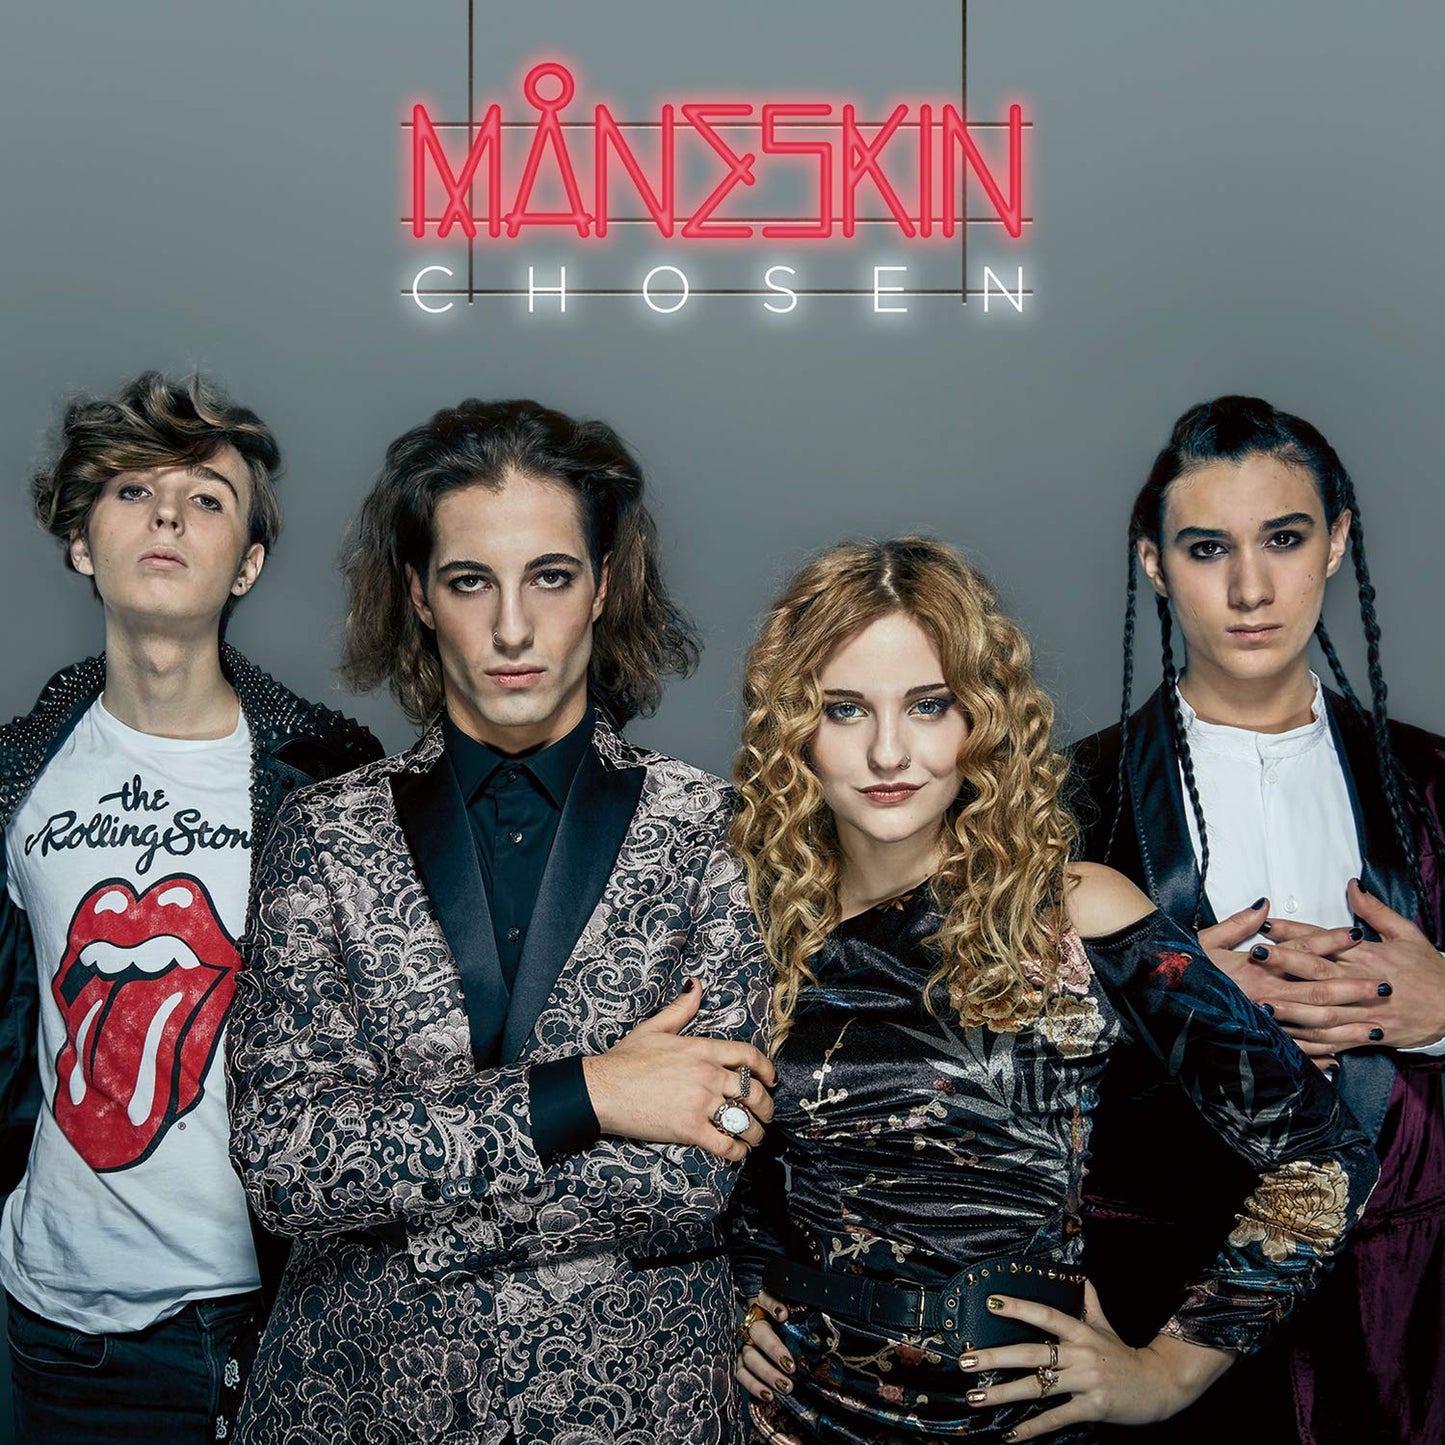 Chosen - Måneskin Vinyl (Limited Edition, Import)